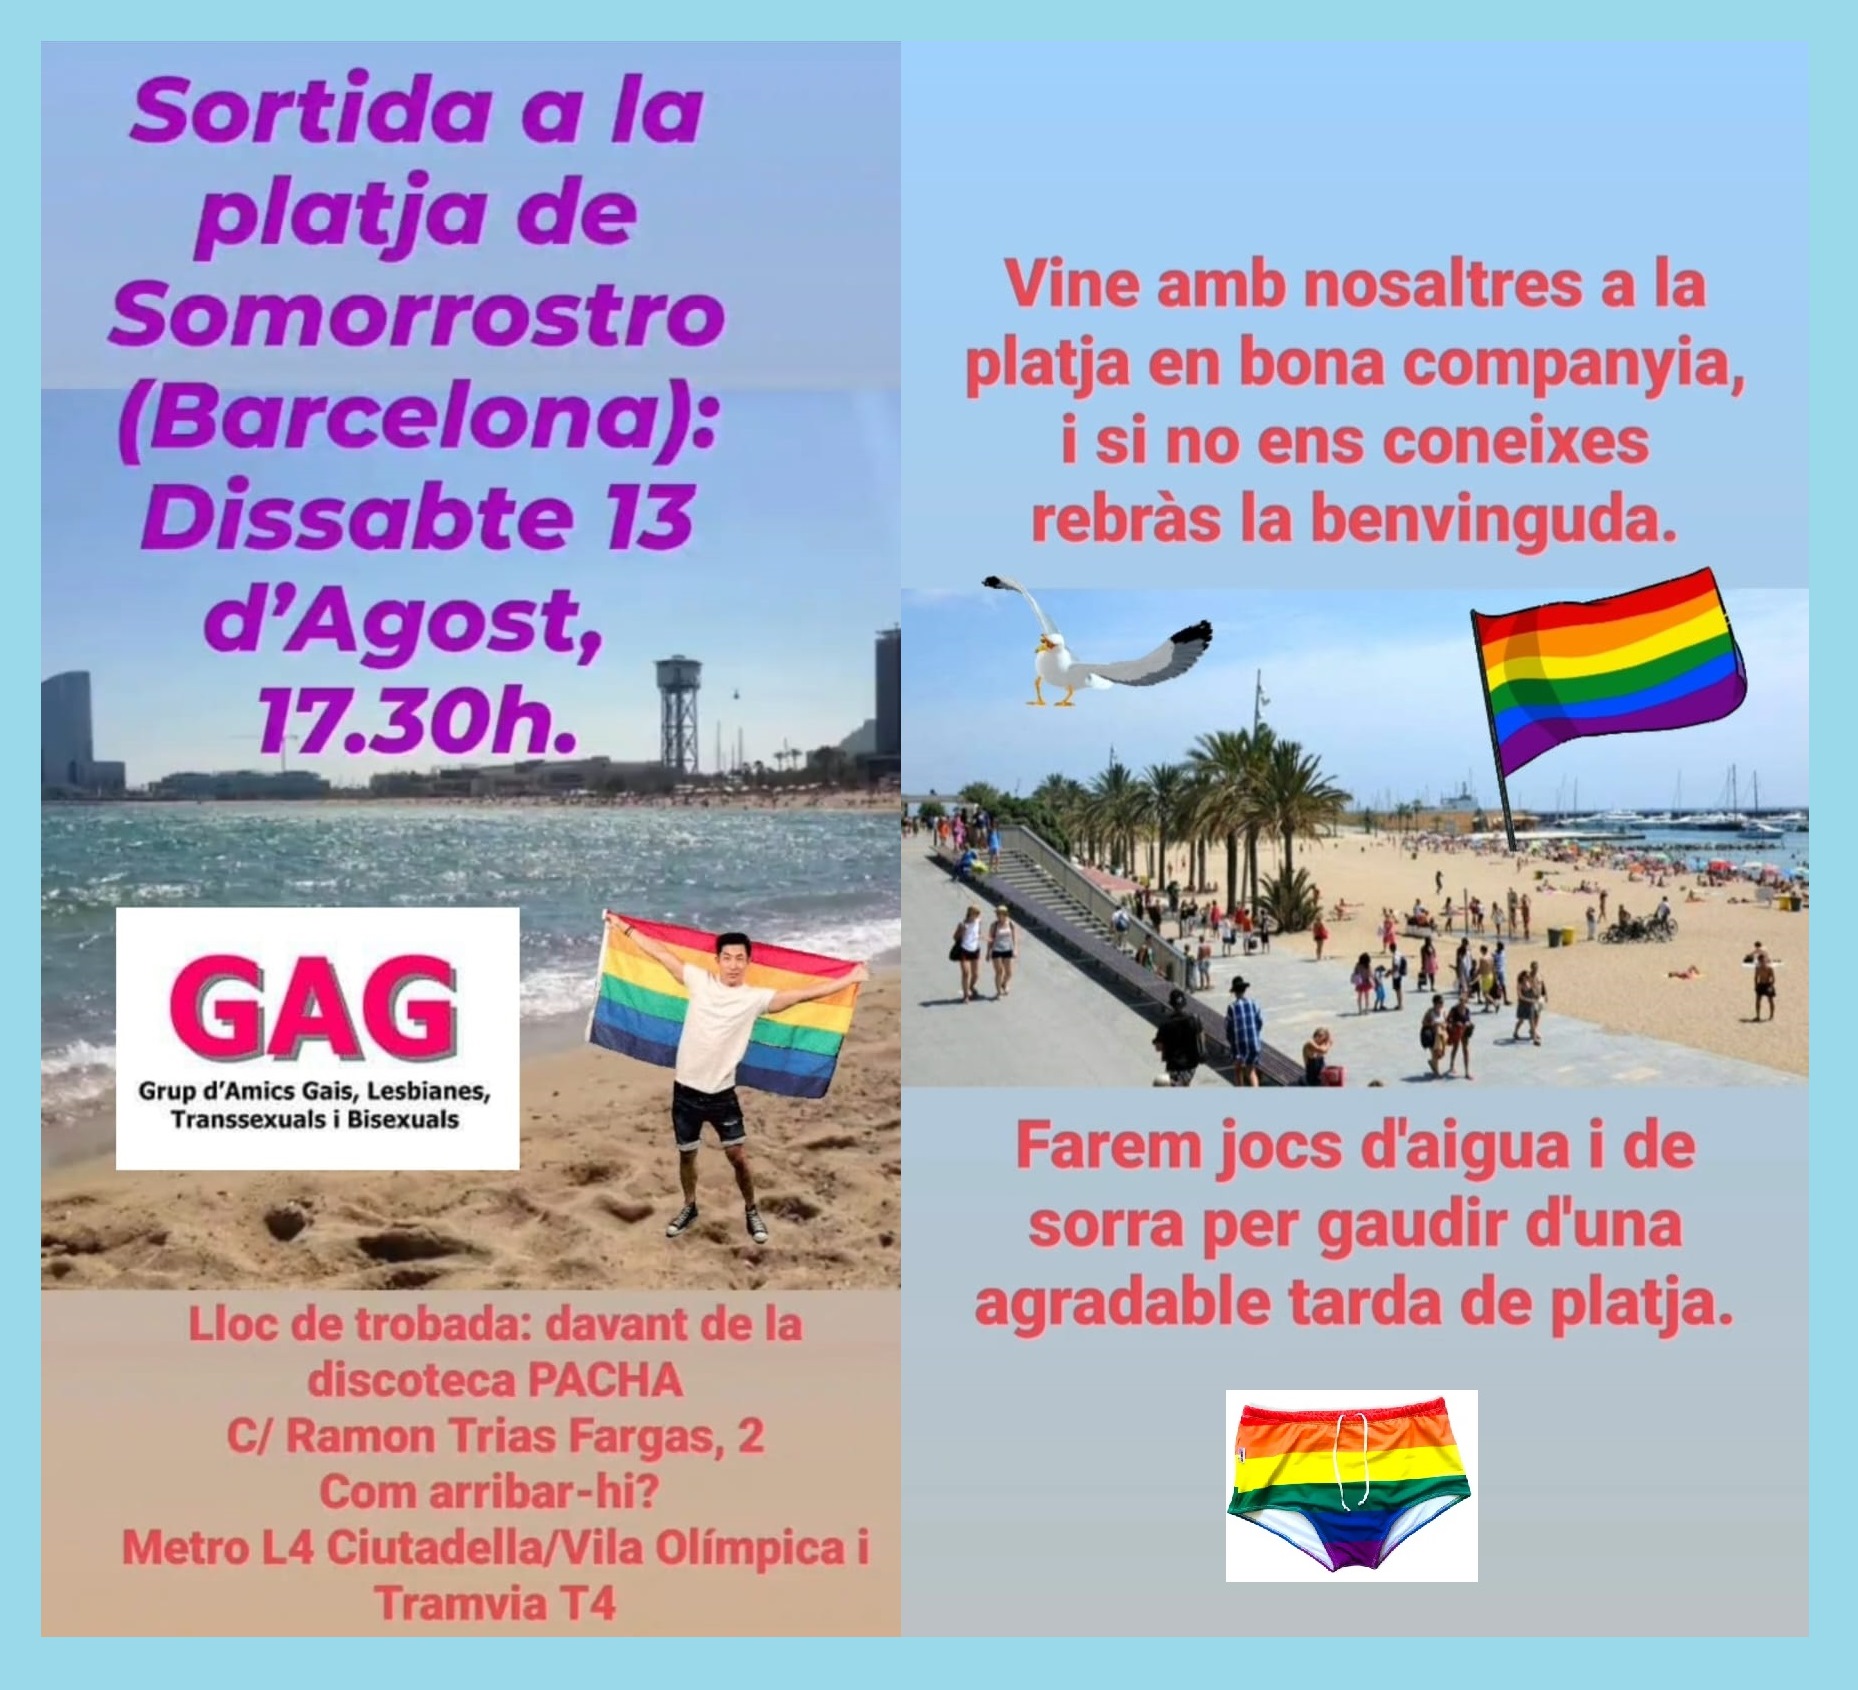 Sábado 13 de agosto, 17.30h. – Salida a la playa de Somorrostro (Barcelona).